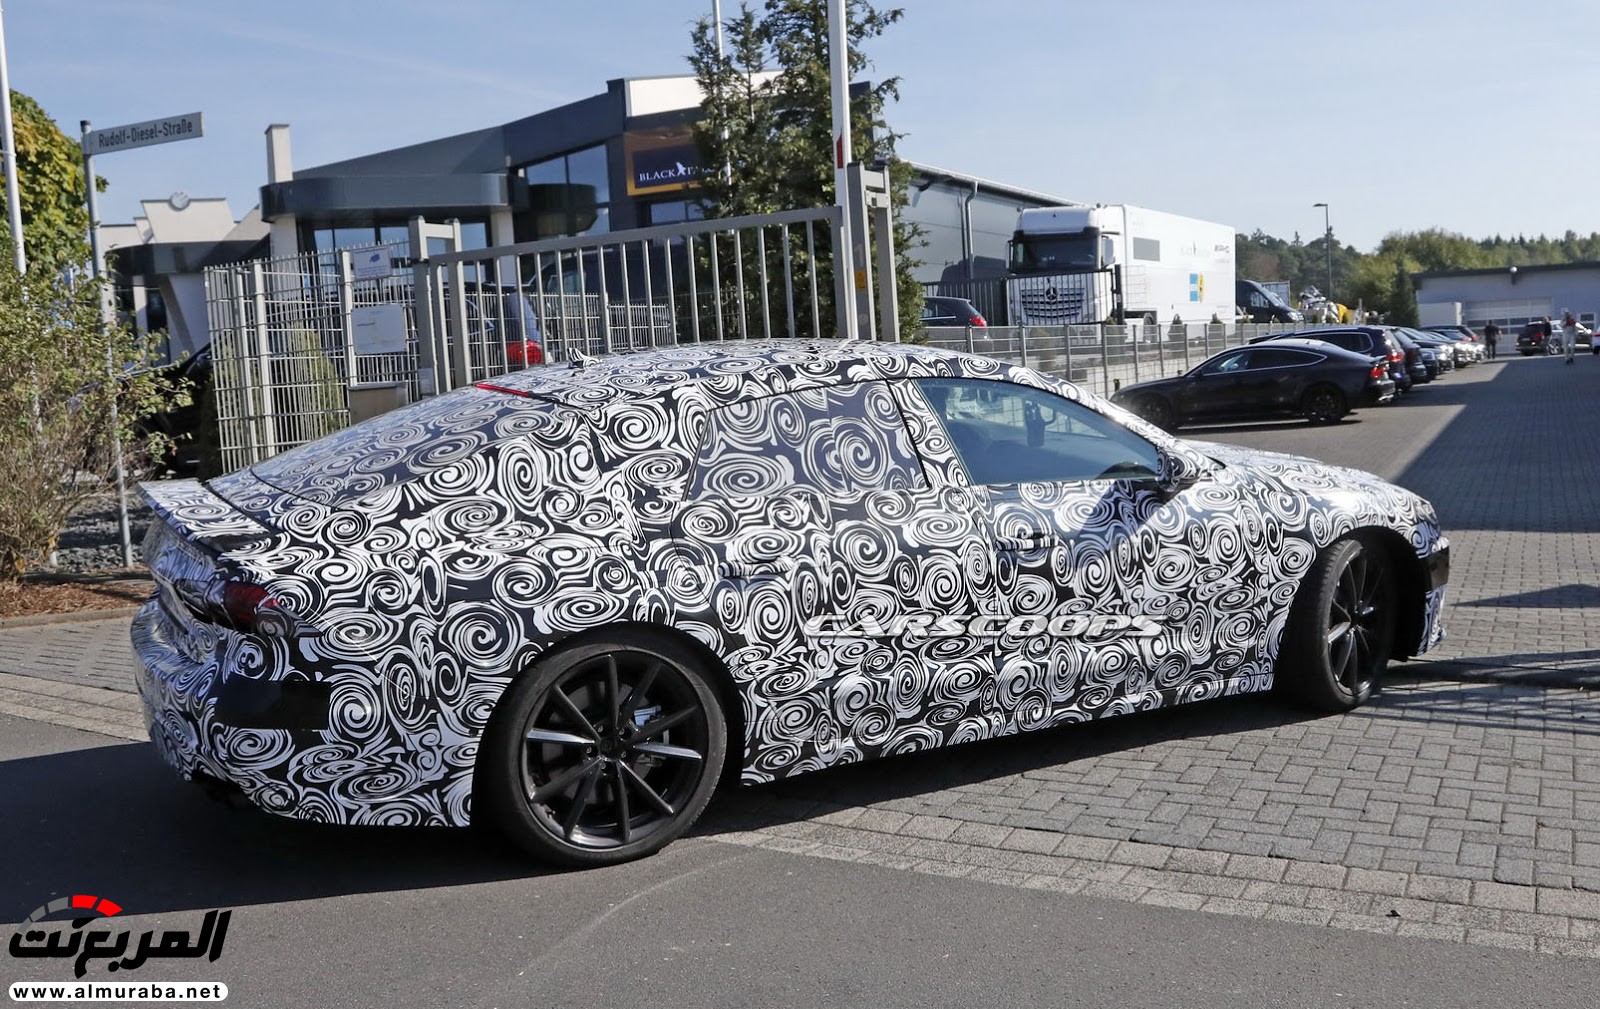 أودي A7 الجديدة كليا 2018 تصل في سبتمبر المقبل بنسخة ذات مكونات هجينة ضمن نطاقها Audi 14